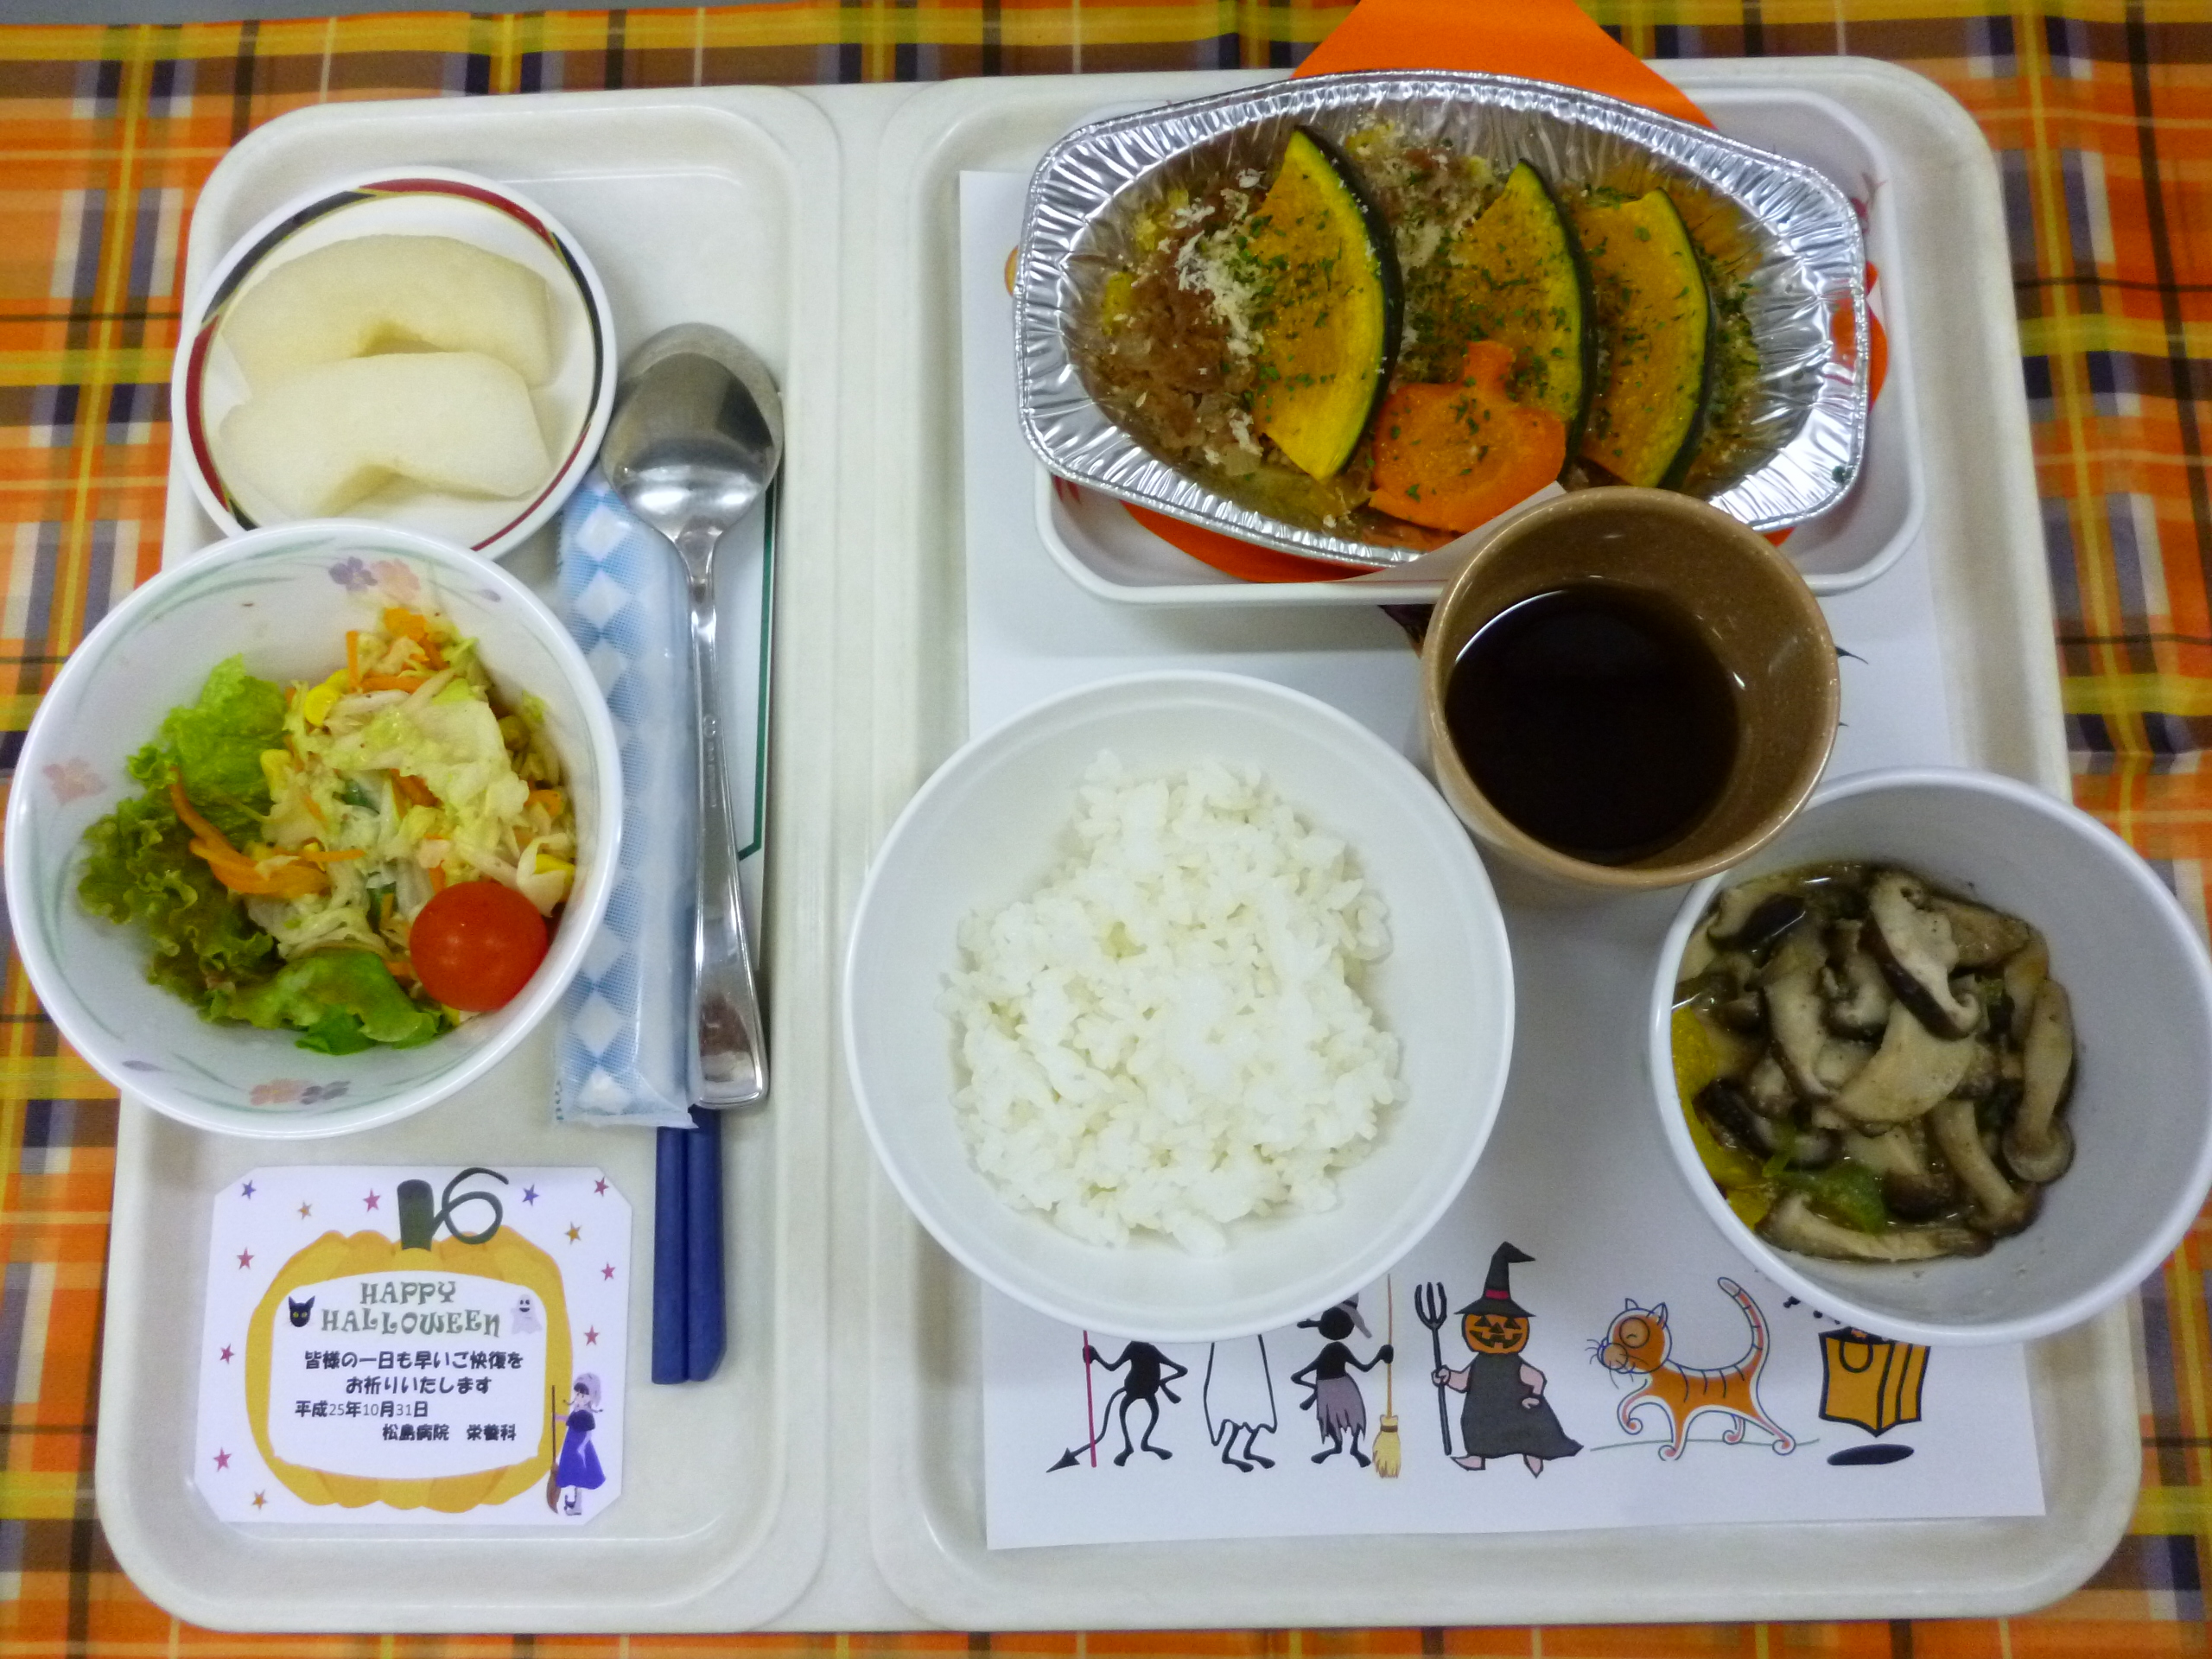 ハロウィンを楽しもう 松島病院 栄養科のブログ